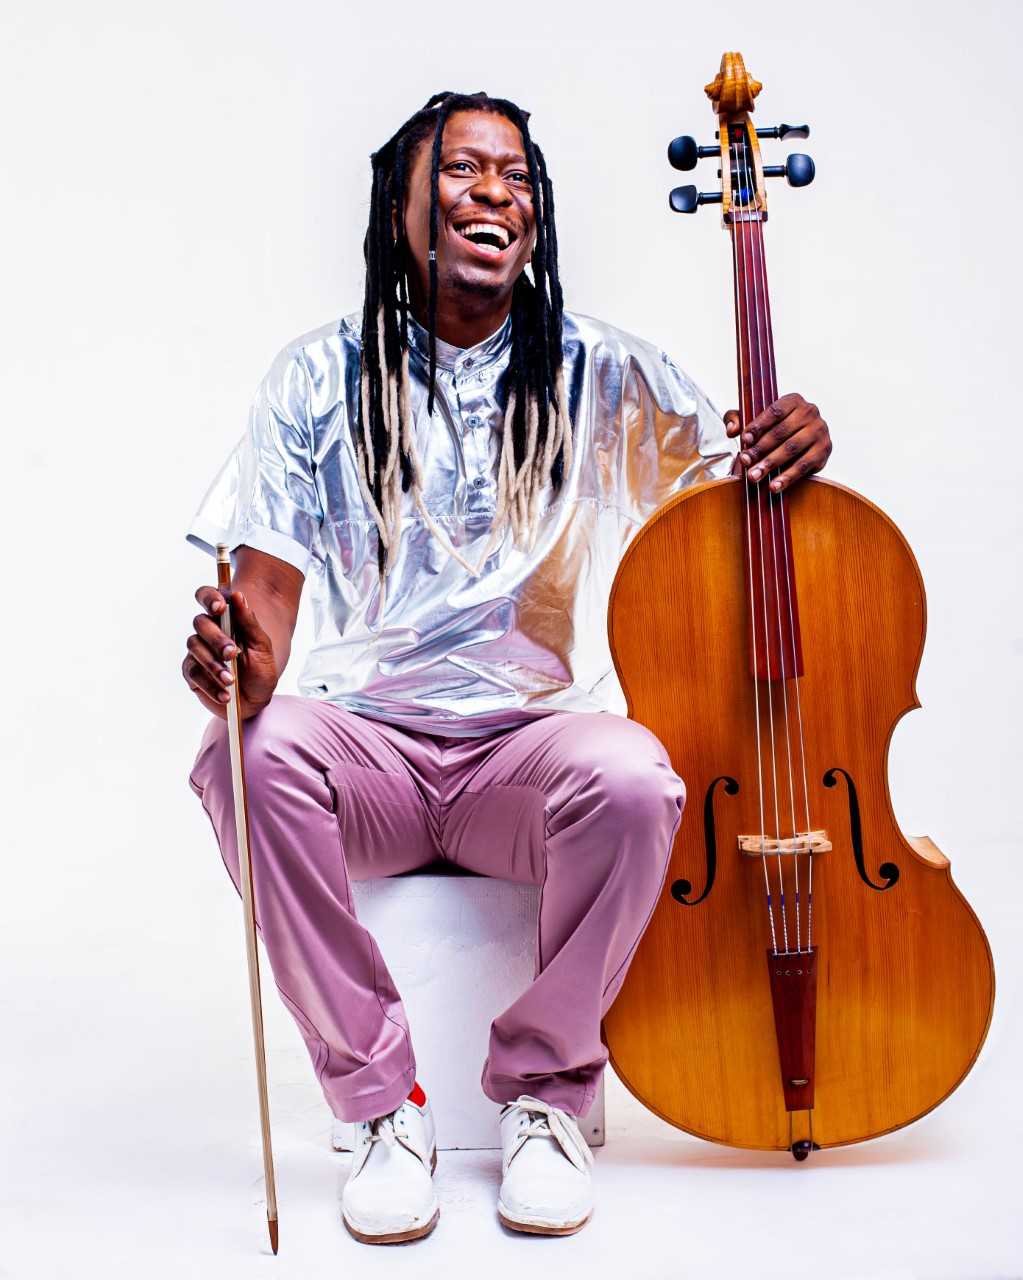 Farbfotographie: Der Künstler sitzt auf einem Stuhl, dem Betrachter gegenüber, weiße Schnürschuhe, altrosafarbene Hose, ein silbrig glänzendes Kurzarmhemd. In der rechten Hand hält er den Bogen, mit der linken Hand umgreift er den Hals eines Cellos.